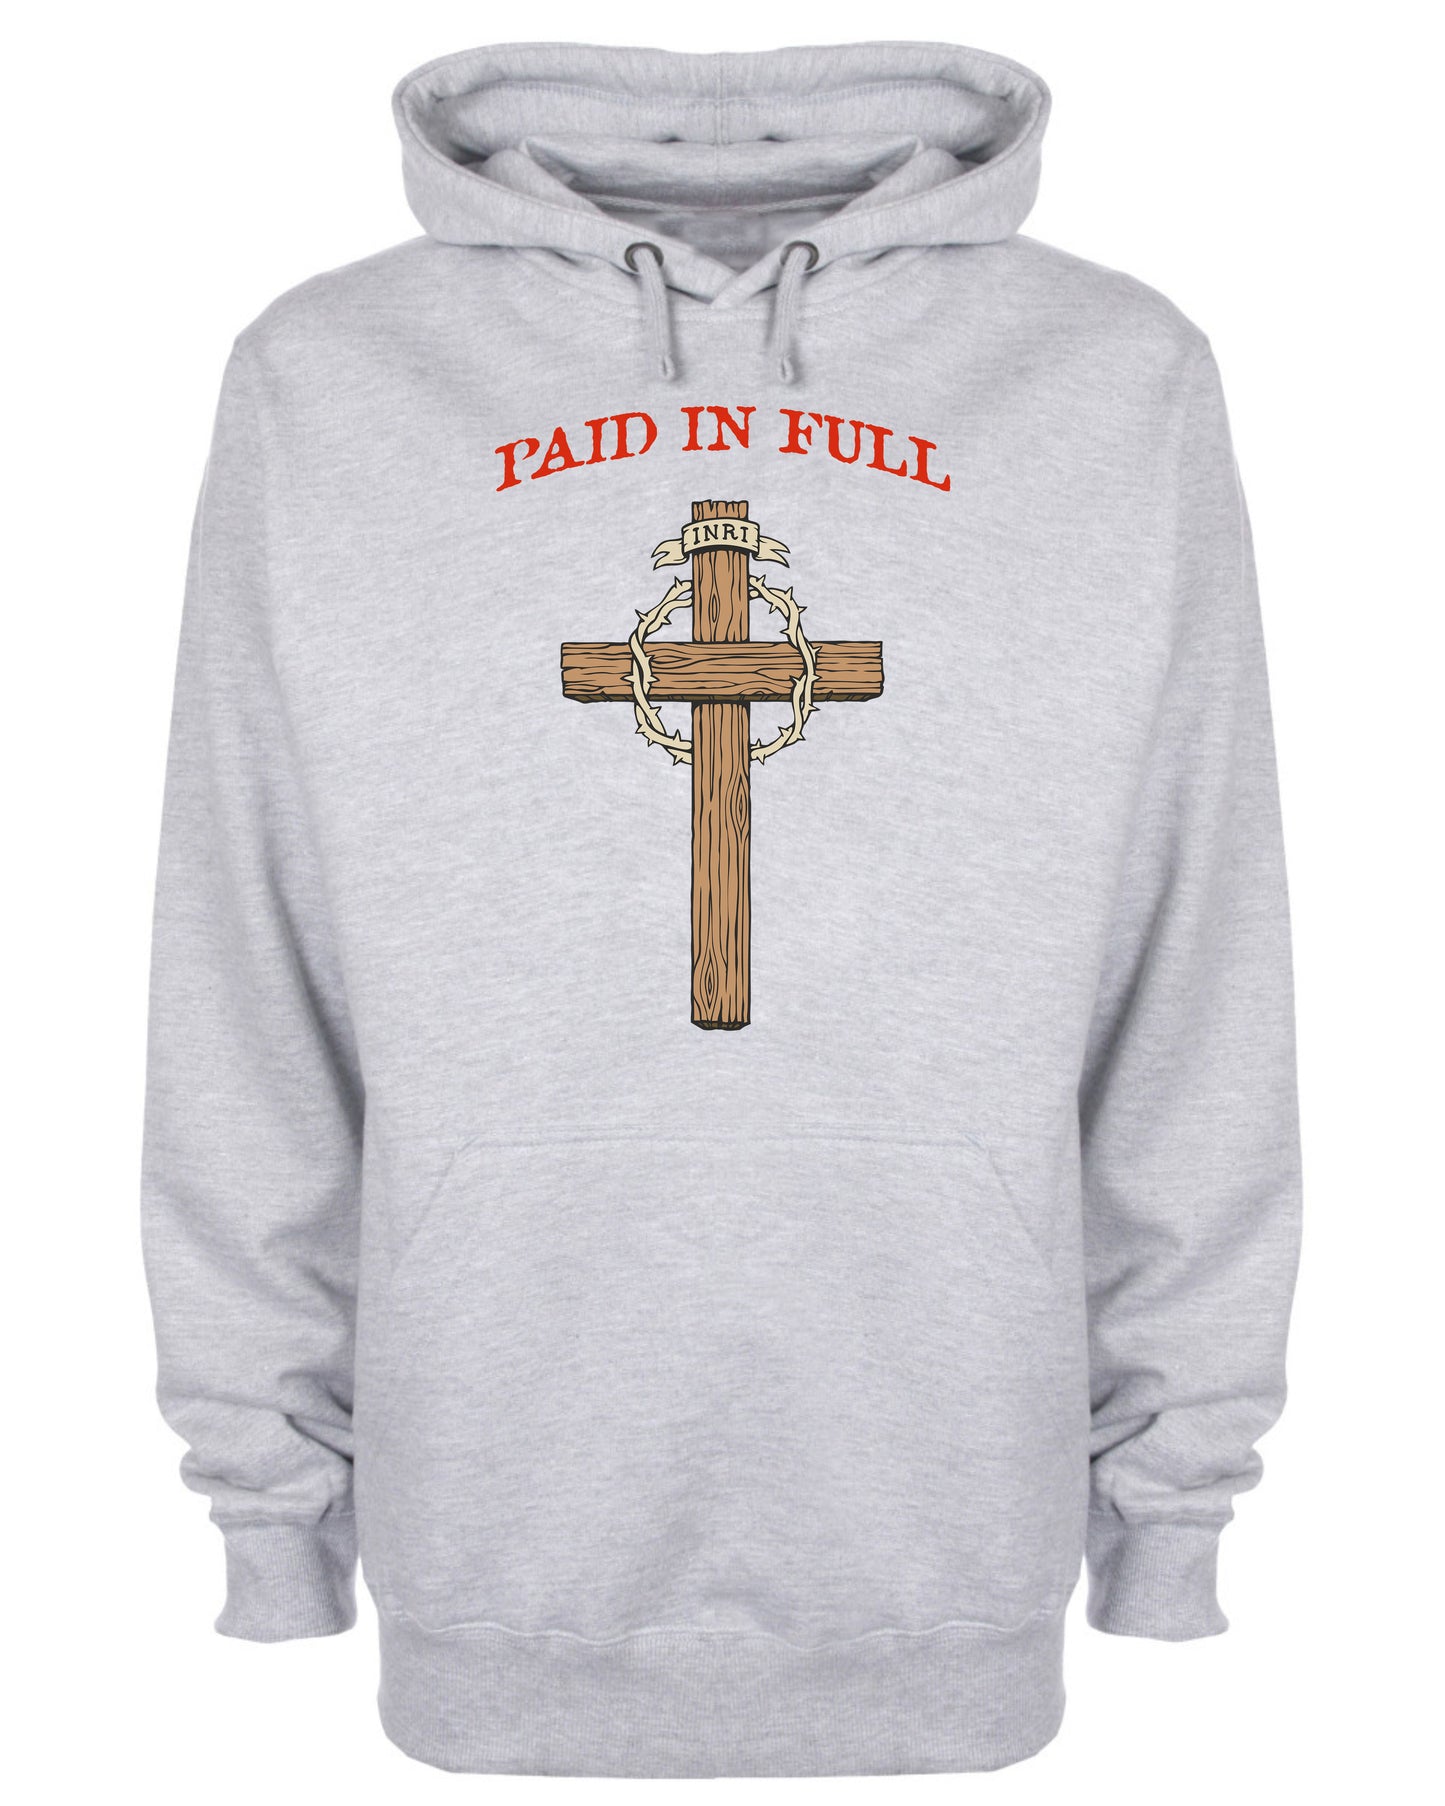 Paid In Full By Christ INRI Hoodie Christian Sweatshirt